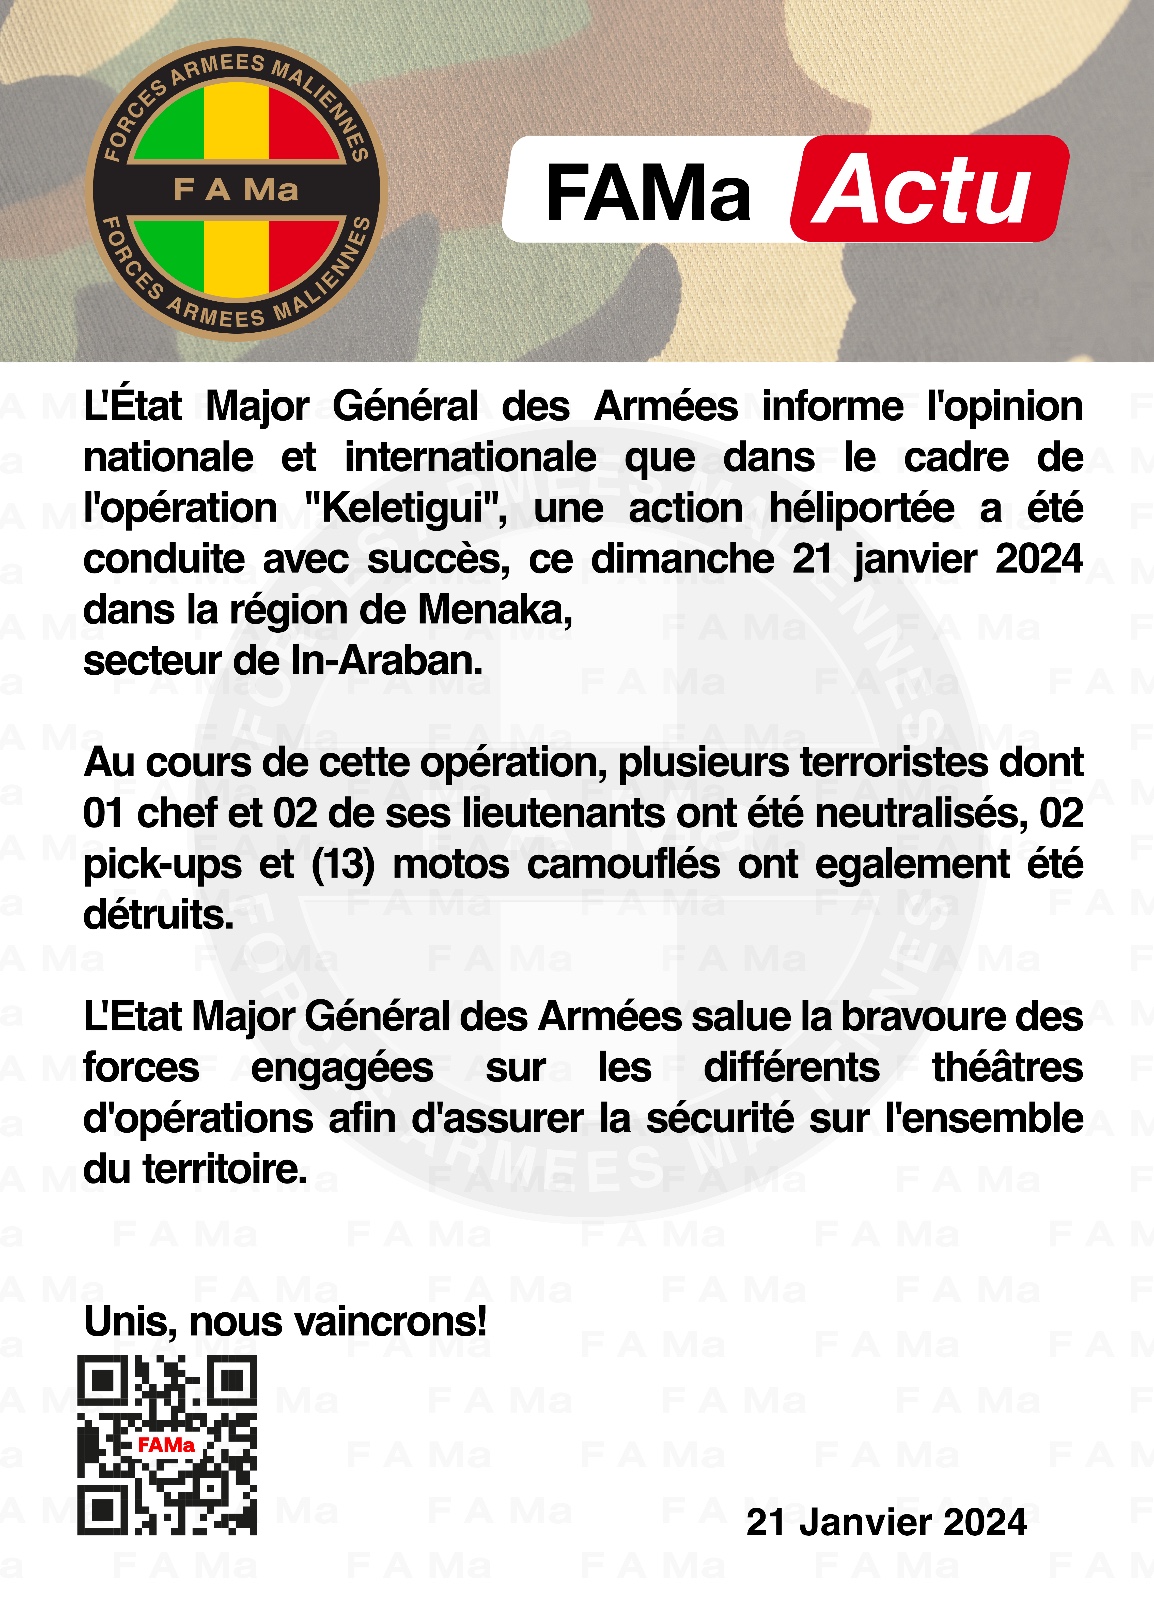  L’État Major Général des Armées informe l’opinion nationale et internationale que dans le cadre de l’opération « Keletigui », une action héliportée a été conduite avec succès, ce dimanche 21 